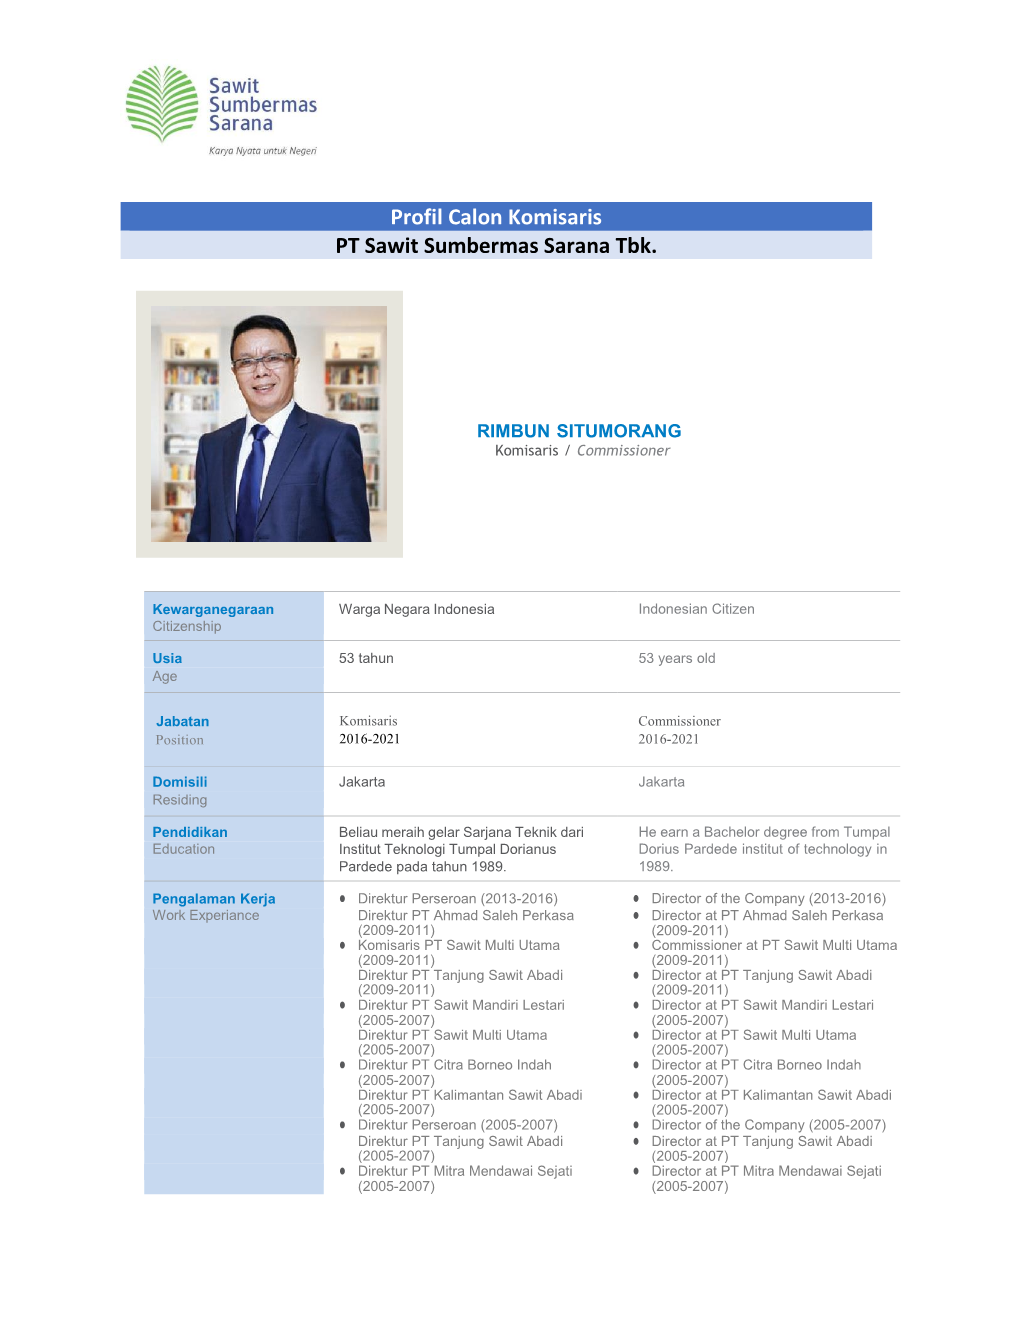 Profil Calon Komisaris PT Sawit Sumbermas Sarana Tbk